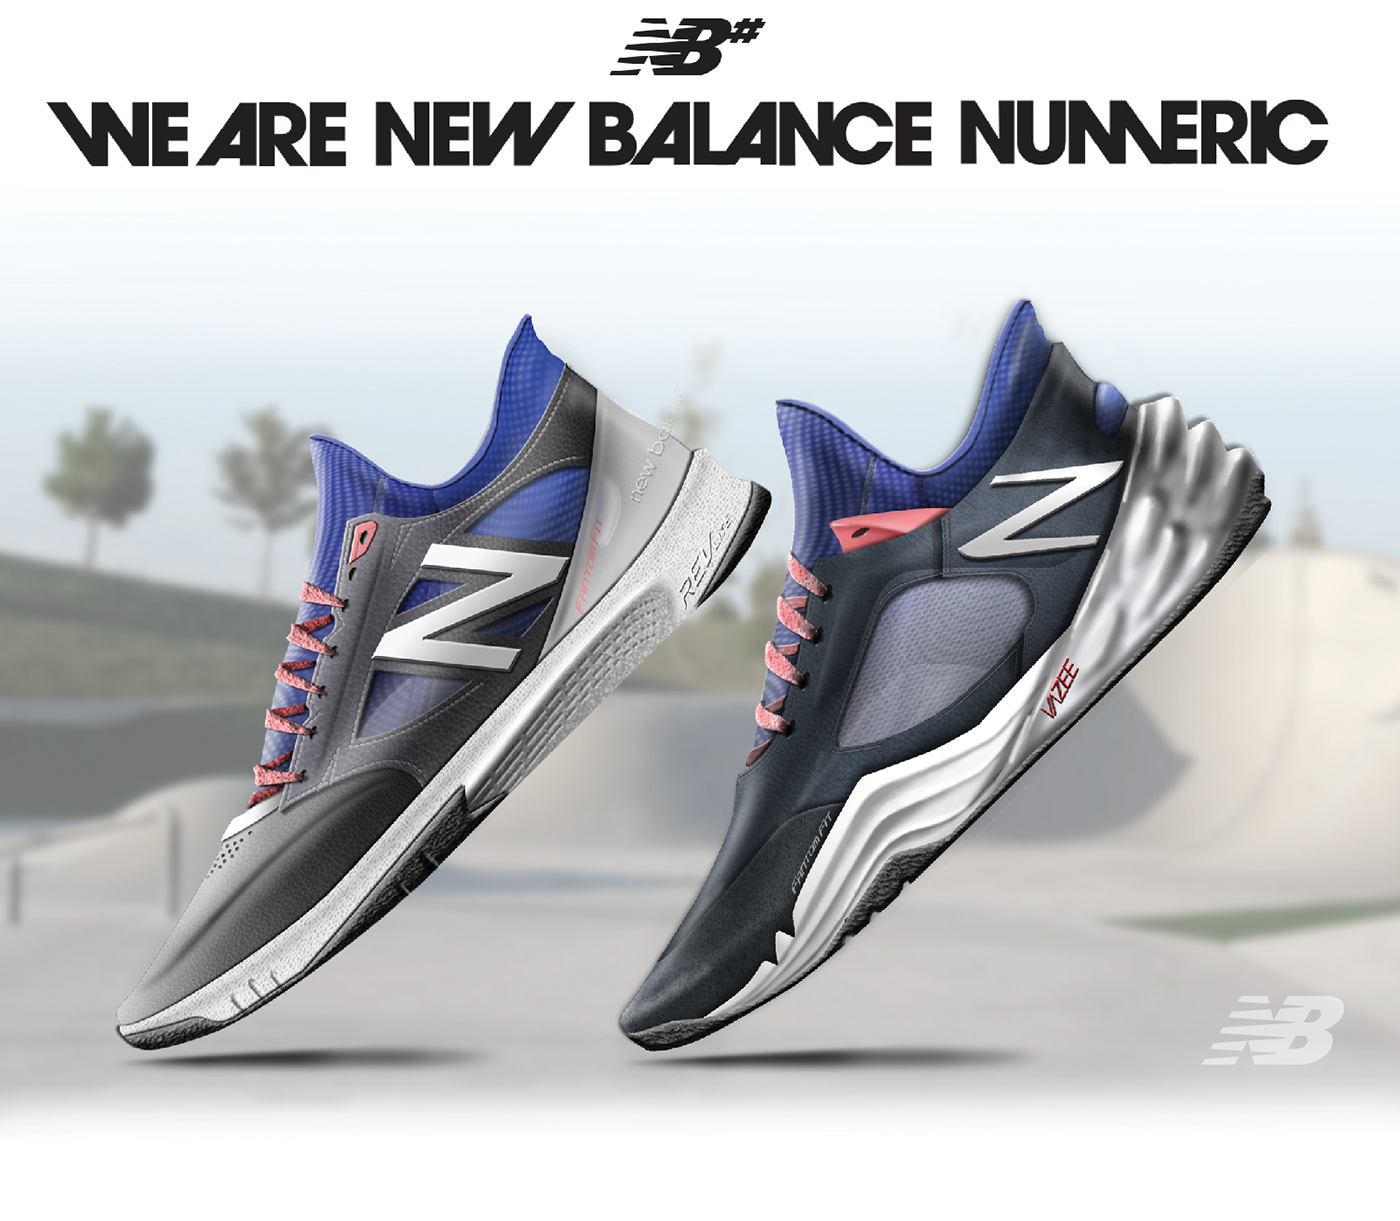 footwear design footwear design shoe nike sb New Balance skater Vans lifestyle footwear sneakers SB skate boarding color graphic rendering